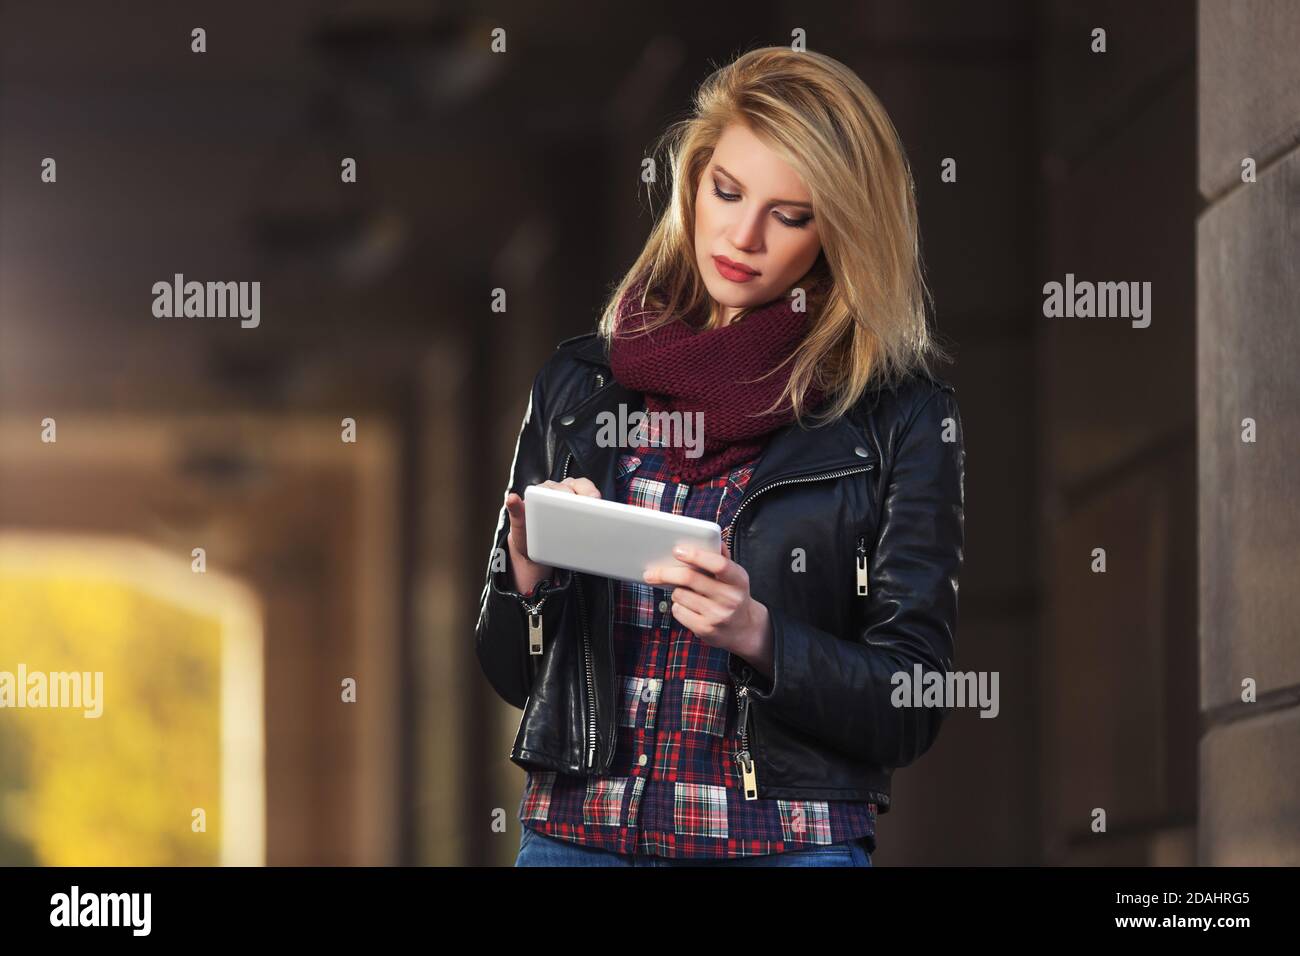 Junge Mode Frau mit digitalen Tablet-Computer auf Stadt Straße Modisches Damenmodell in schwarzer Lederjacke und Snood Schal Stockfoto